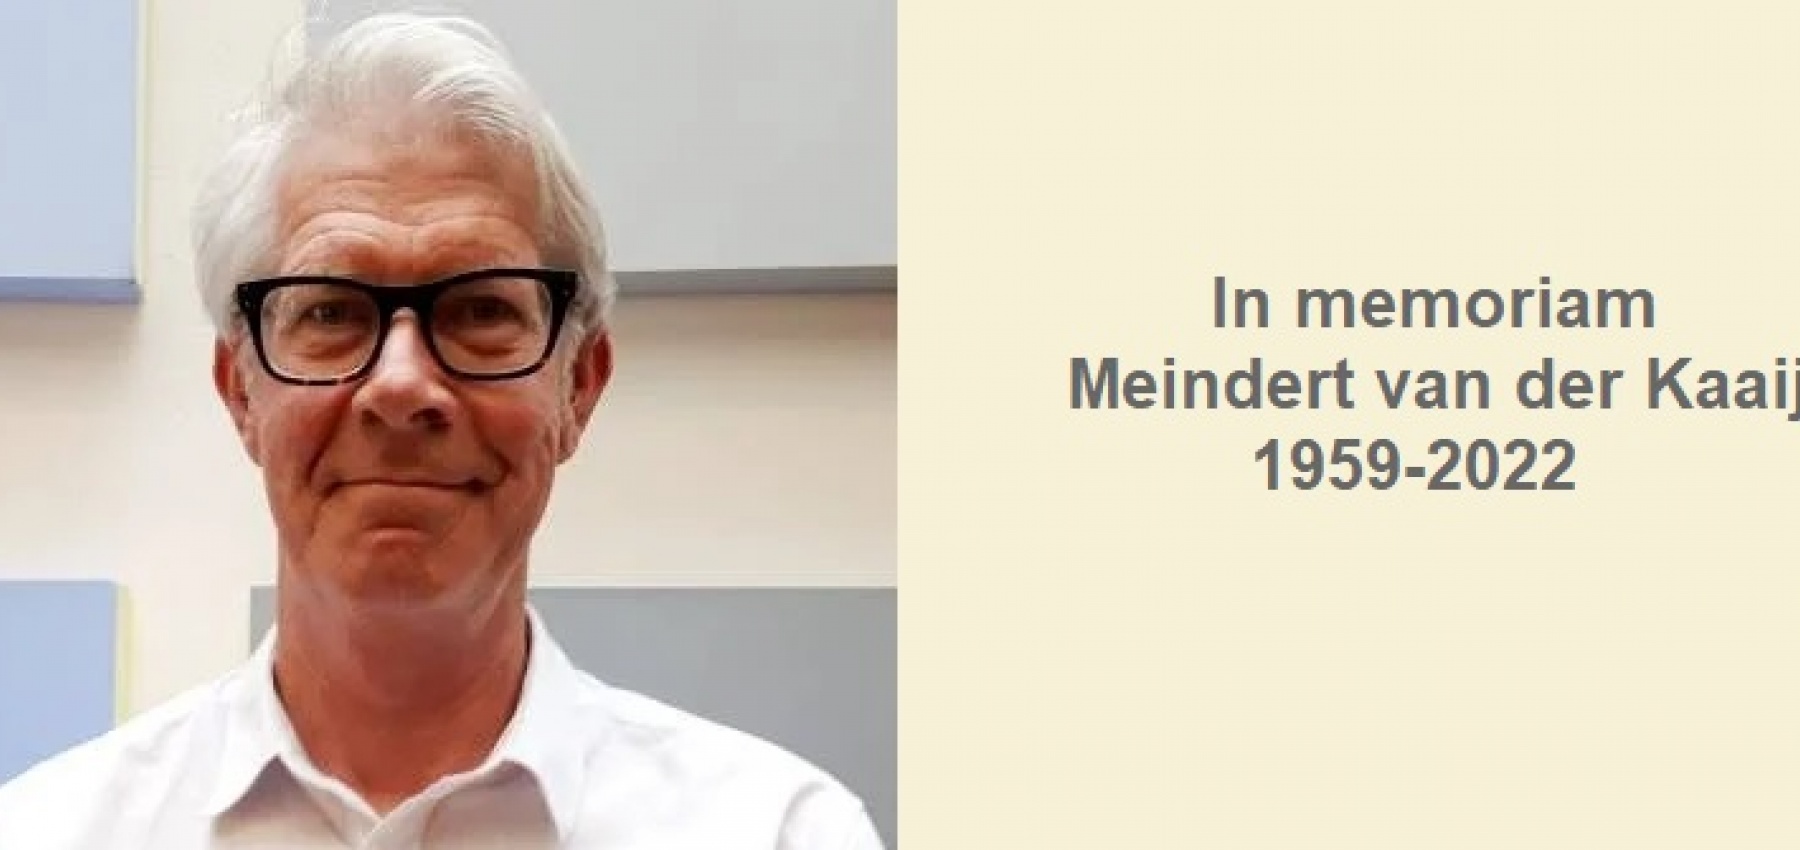 In memoriam Meindert van der Kaaij